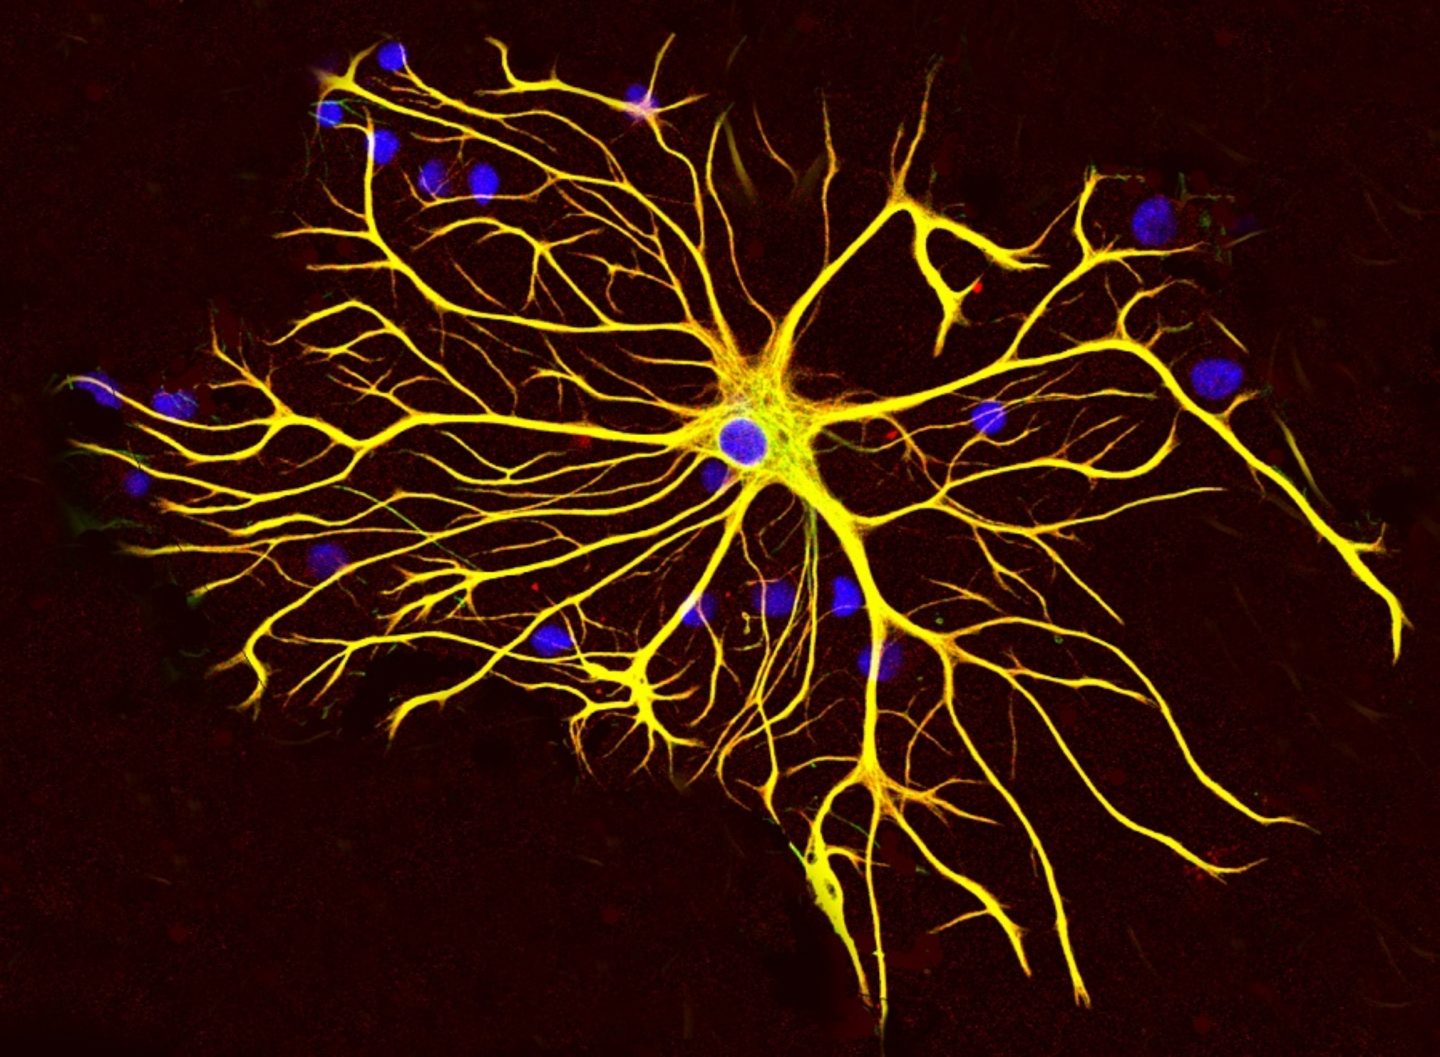 كيف يتم ترميم النسيج العصبي بعد الاذية؟  و ما هو دور الخلايا النجمية؟  - أنا أصدق العلم